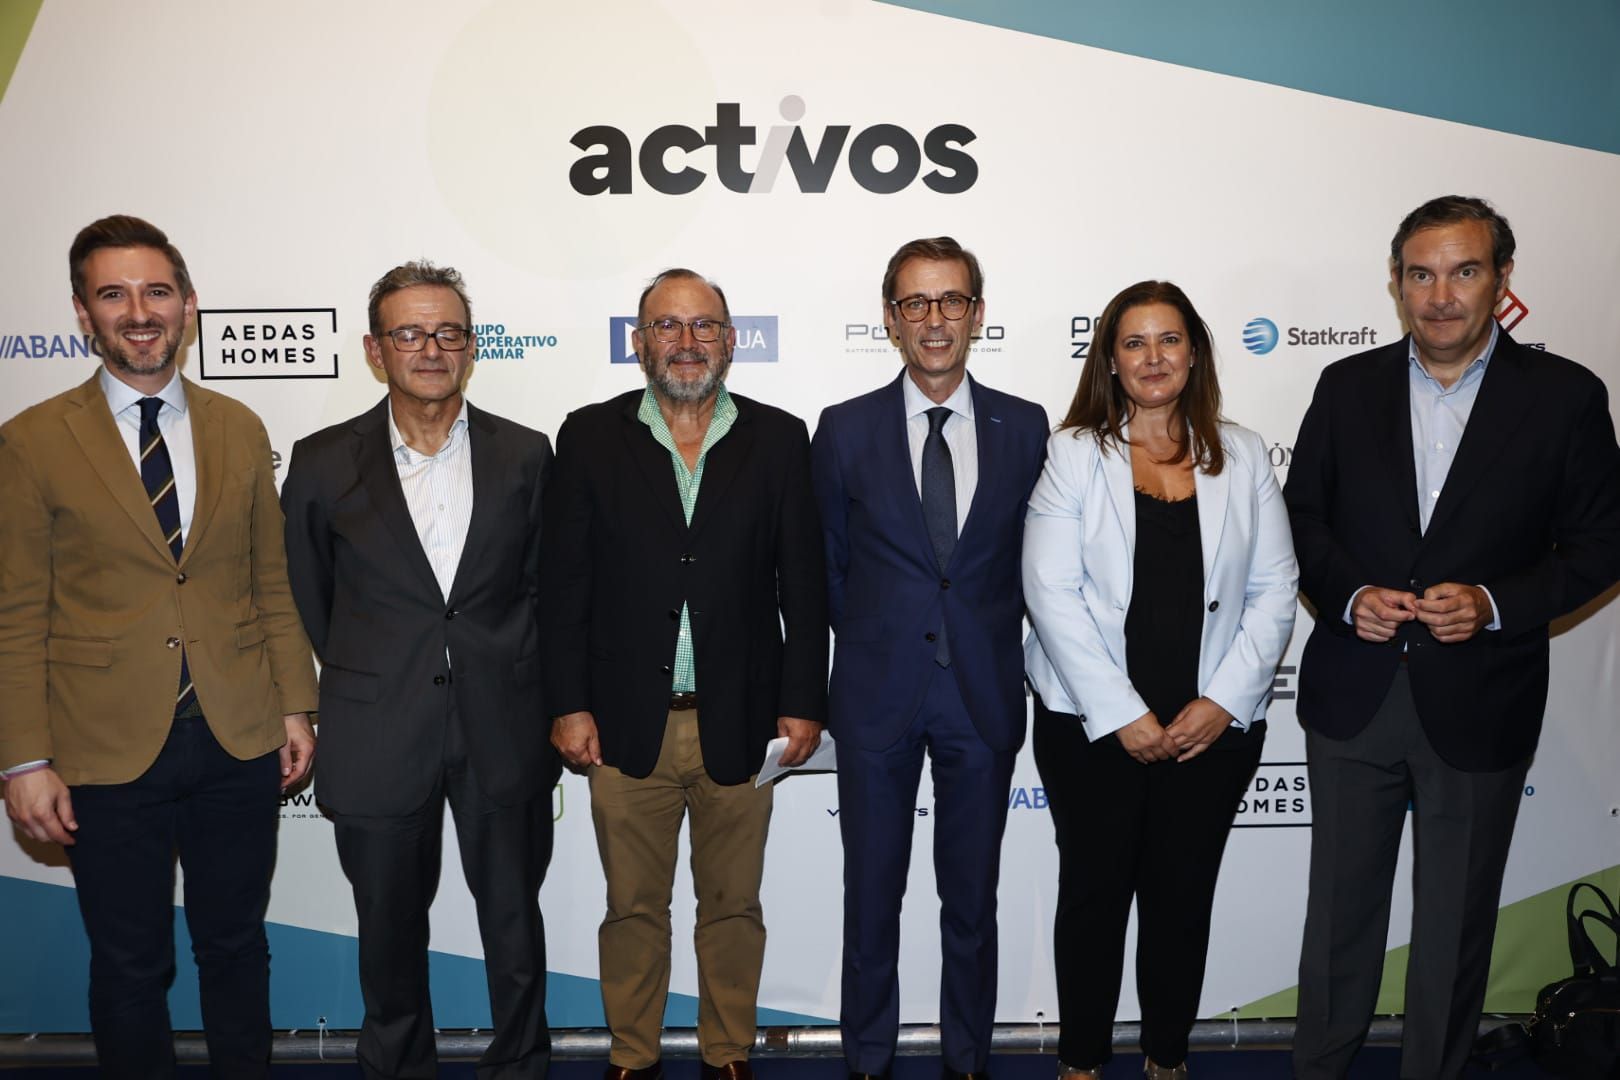 La presentación del suplemento económico 'activos' de Prensa Ibérica en València, en imágenes